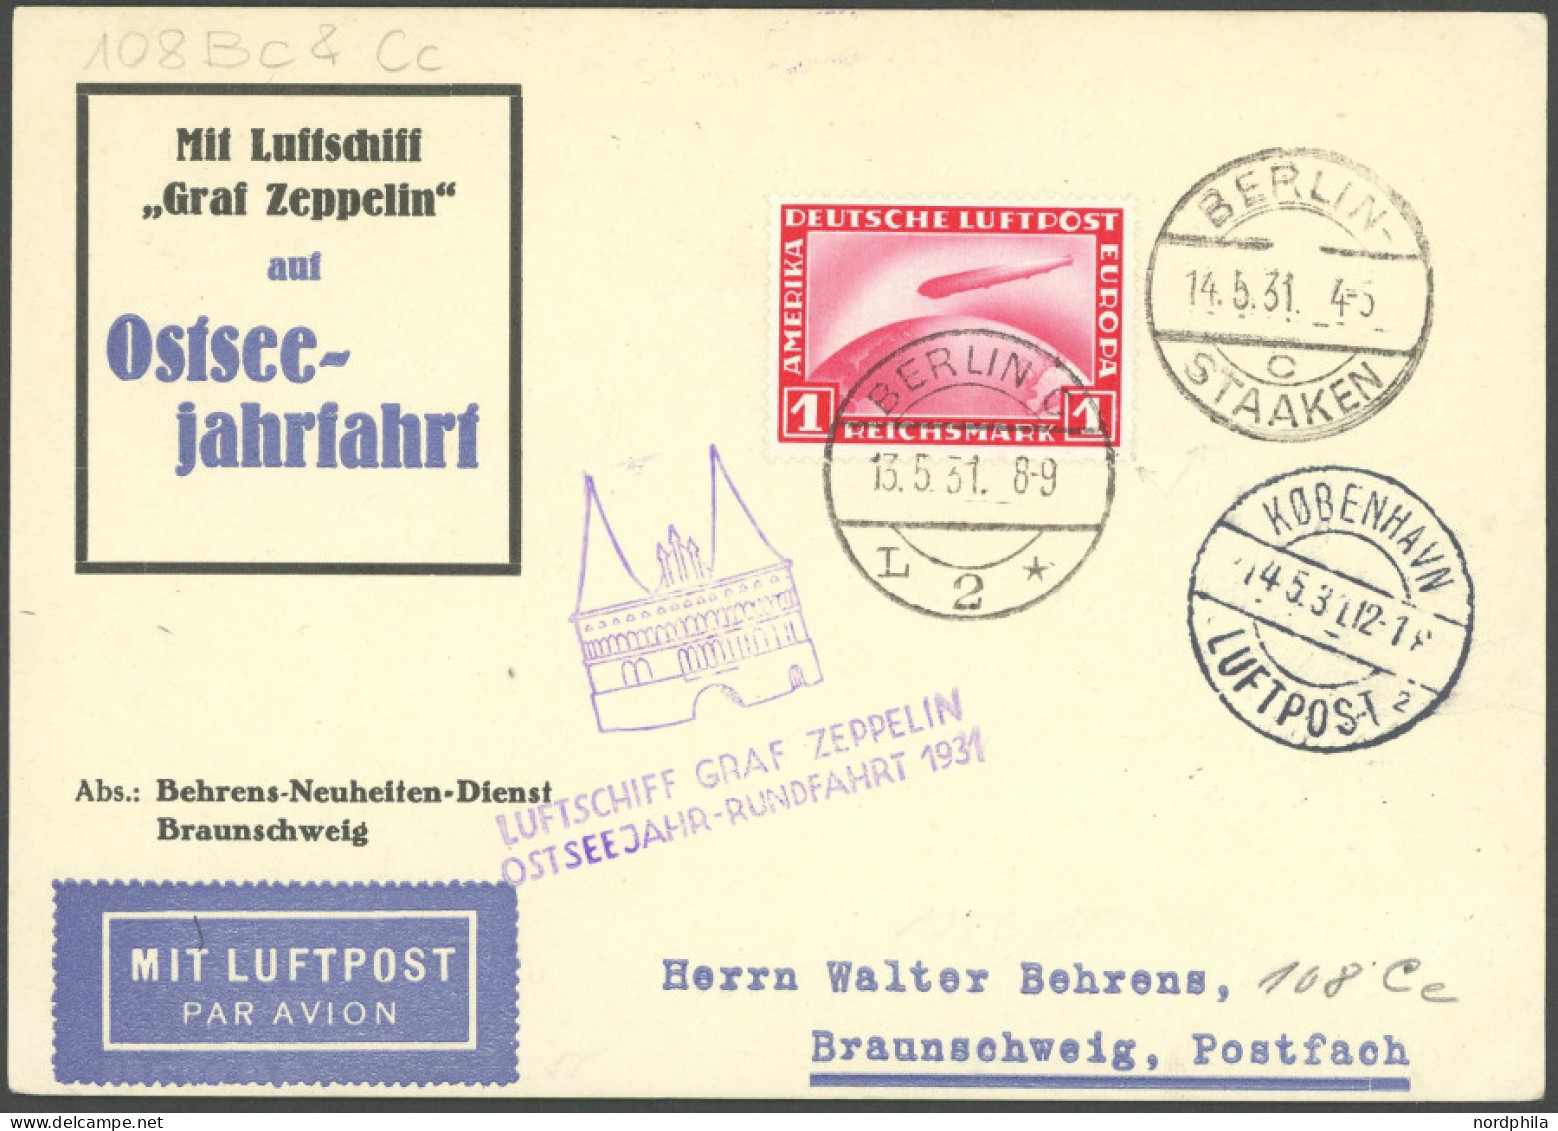 ZEPPELINPOST 108Cc BRIEF, 1931, Ostseejahr-Rundfahrt, Abwurf Kopenhagen, Auflieferung Berlin, Prachtkarte - Correo Aéreo & Zeppelin